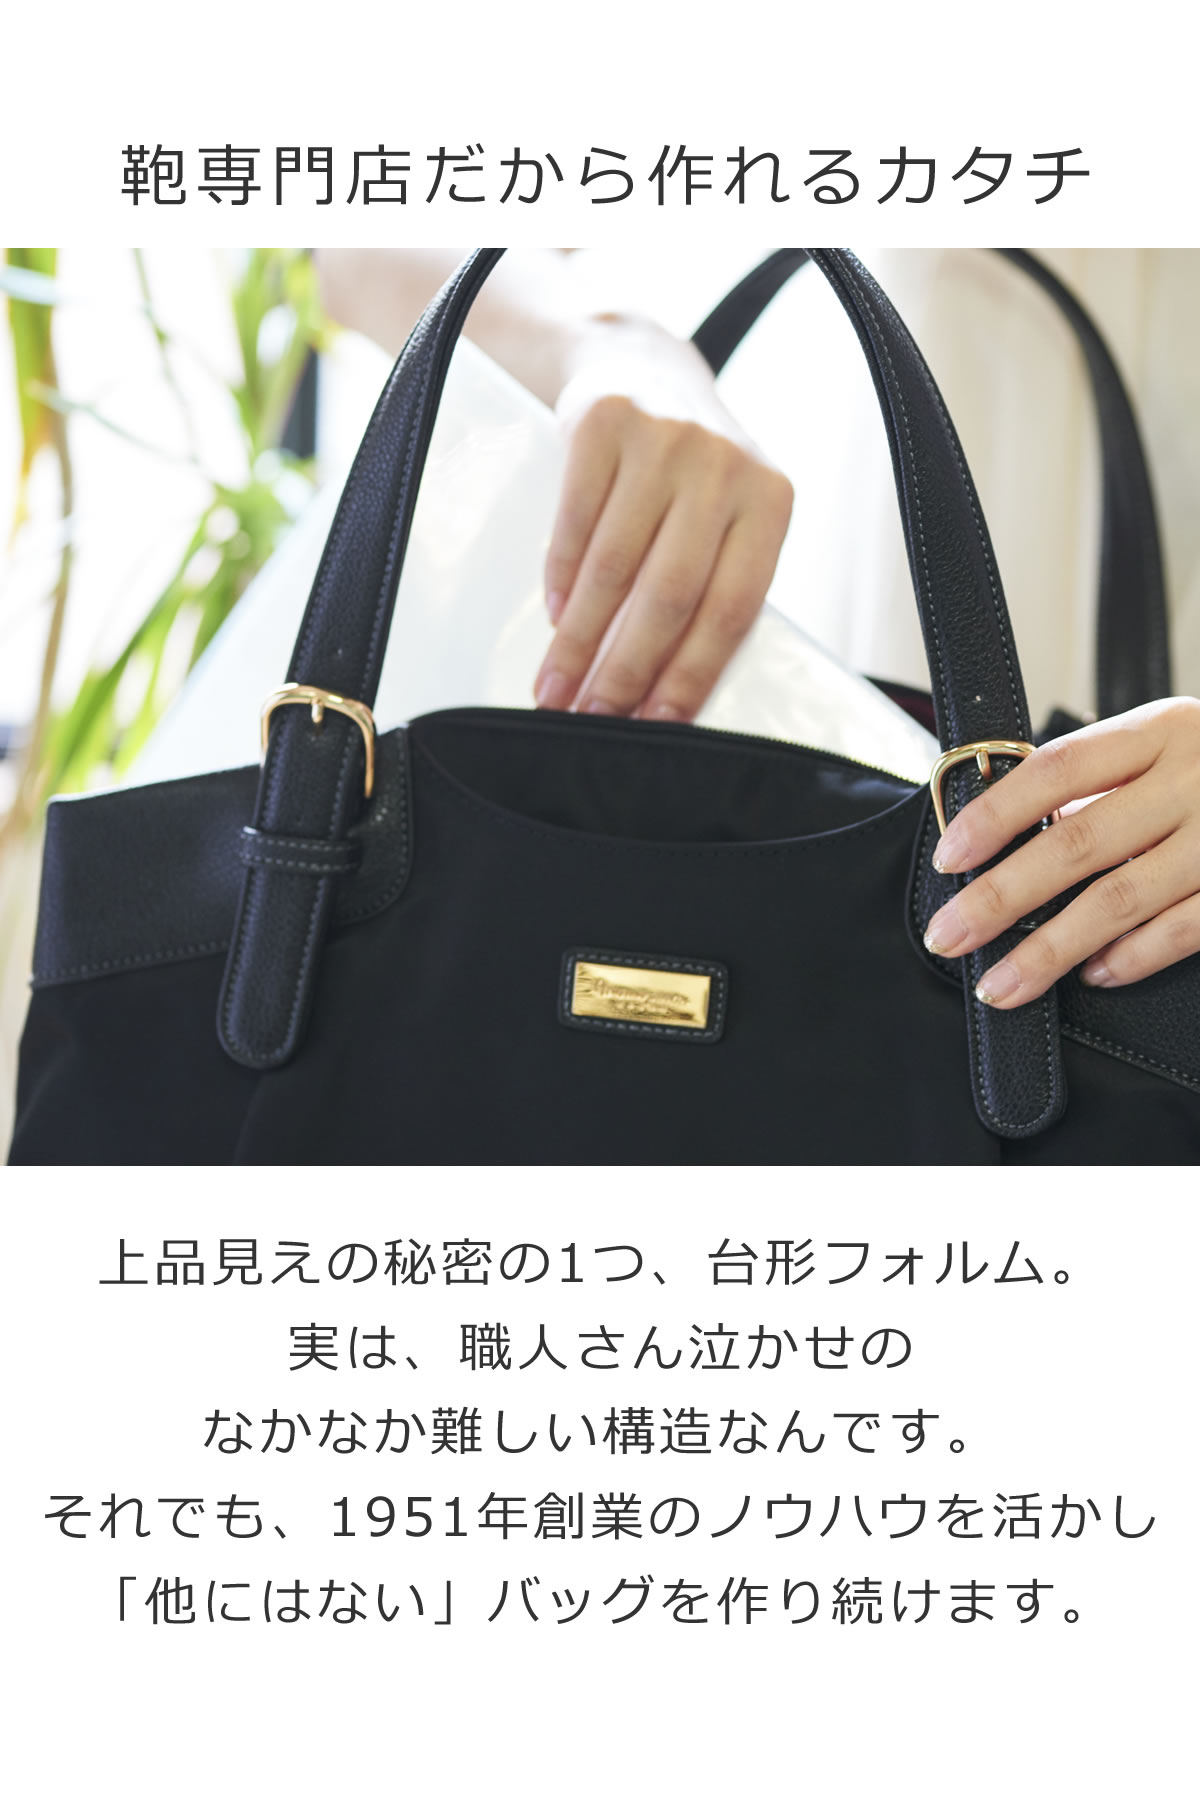 ビジネスバッグ レディース 大容量 高級感 スーツに合わせる ブラウン 上品 日本製 ナイロン 素材